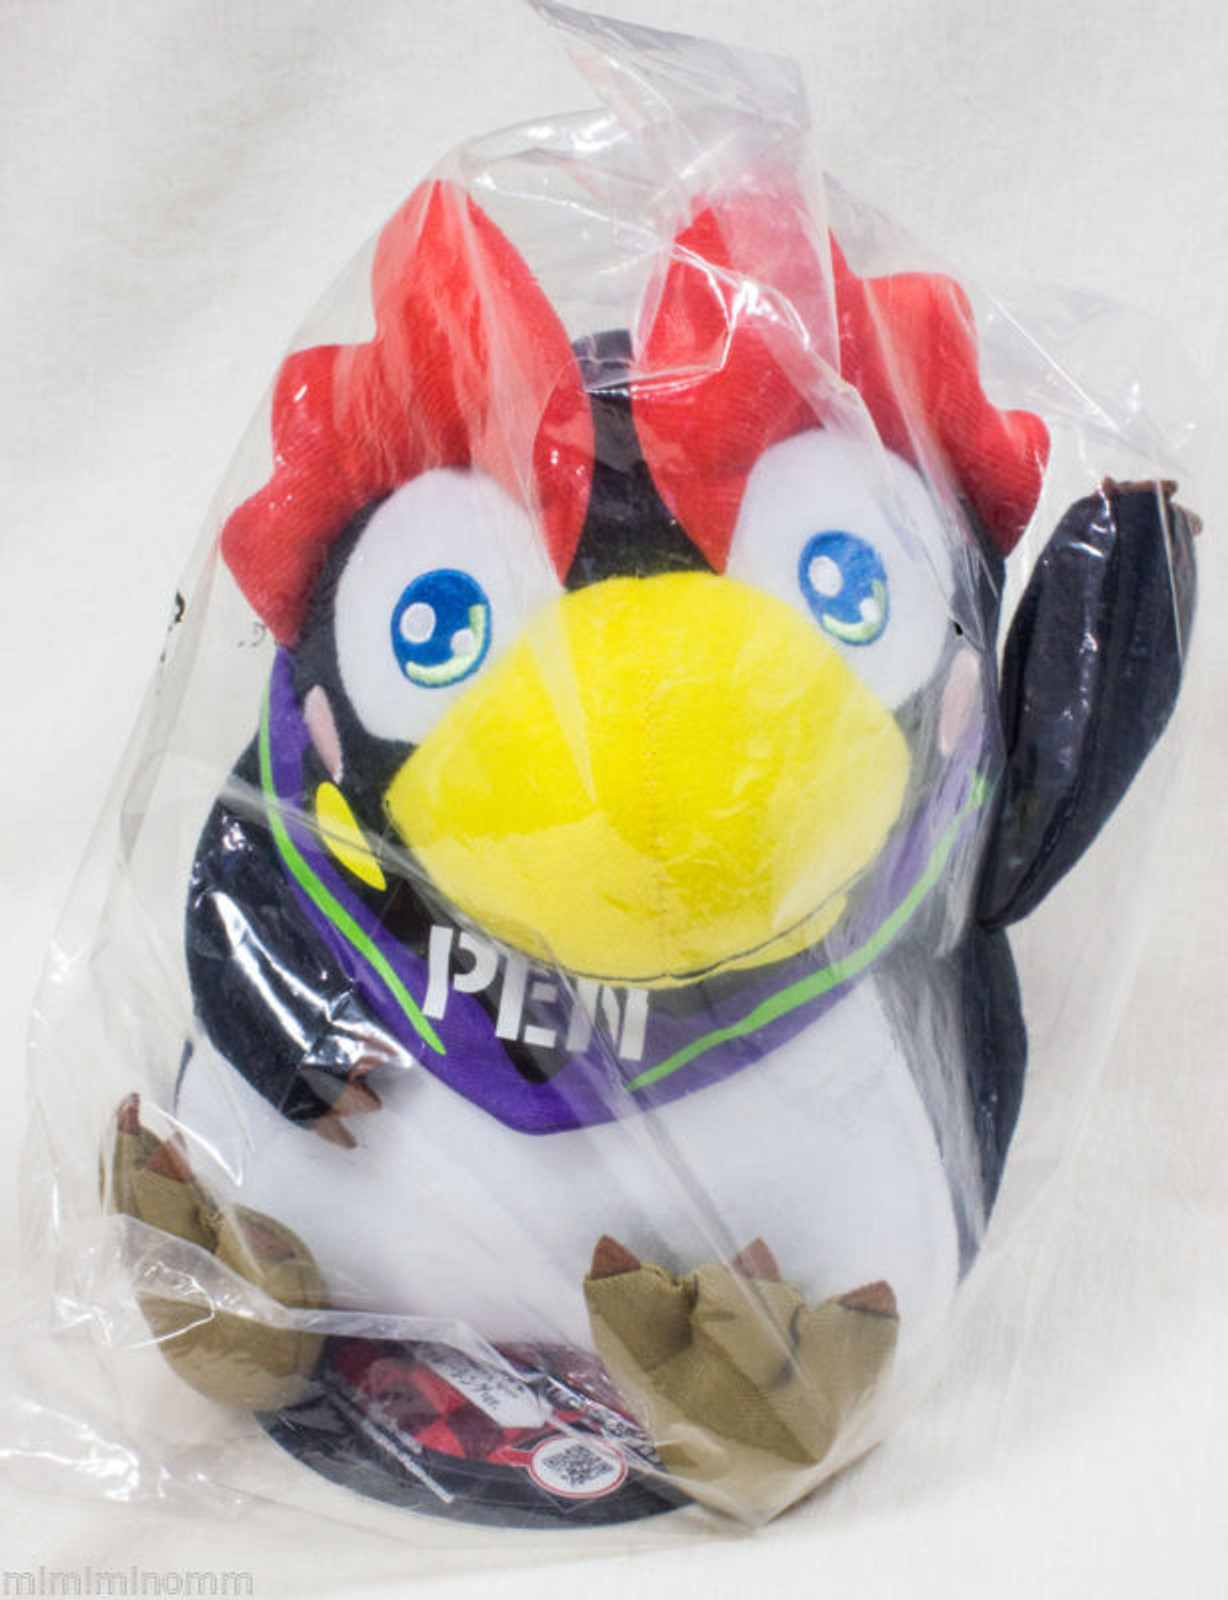 Evangelion Penpen Penguin Plush Doll Figure 10" JAPAN ANIME GAME